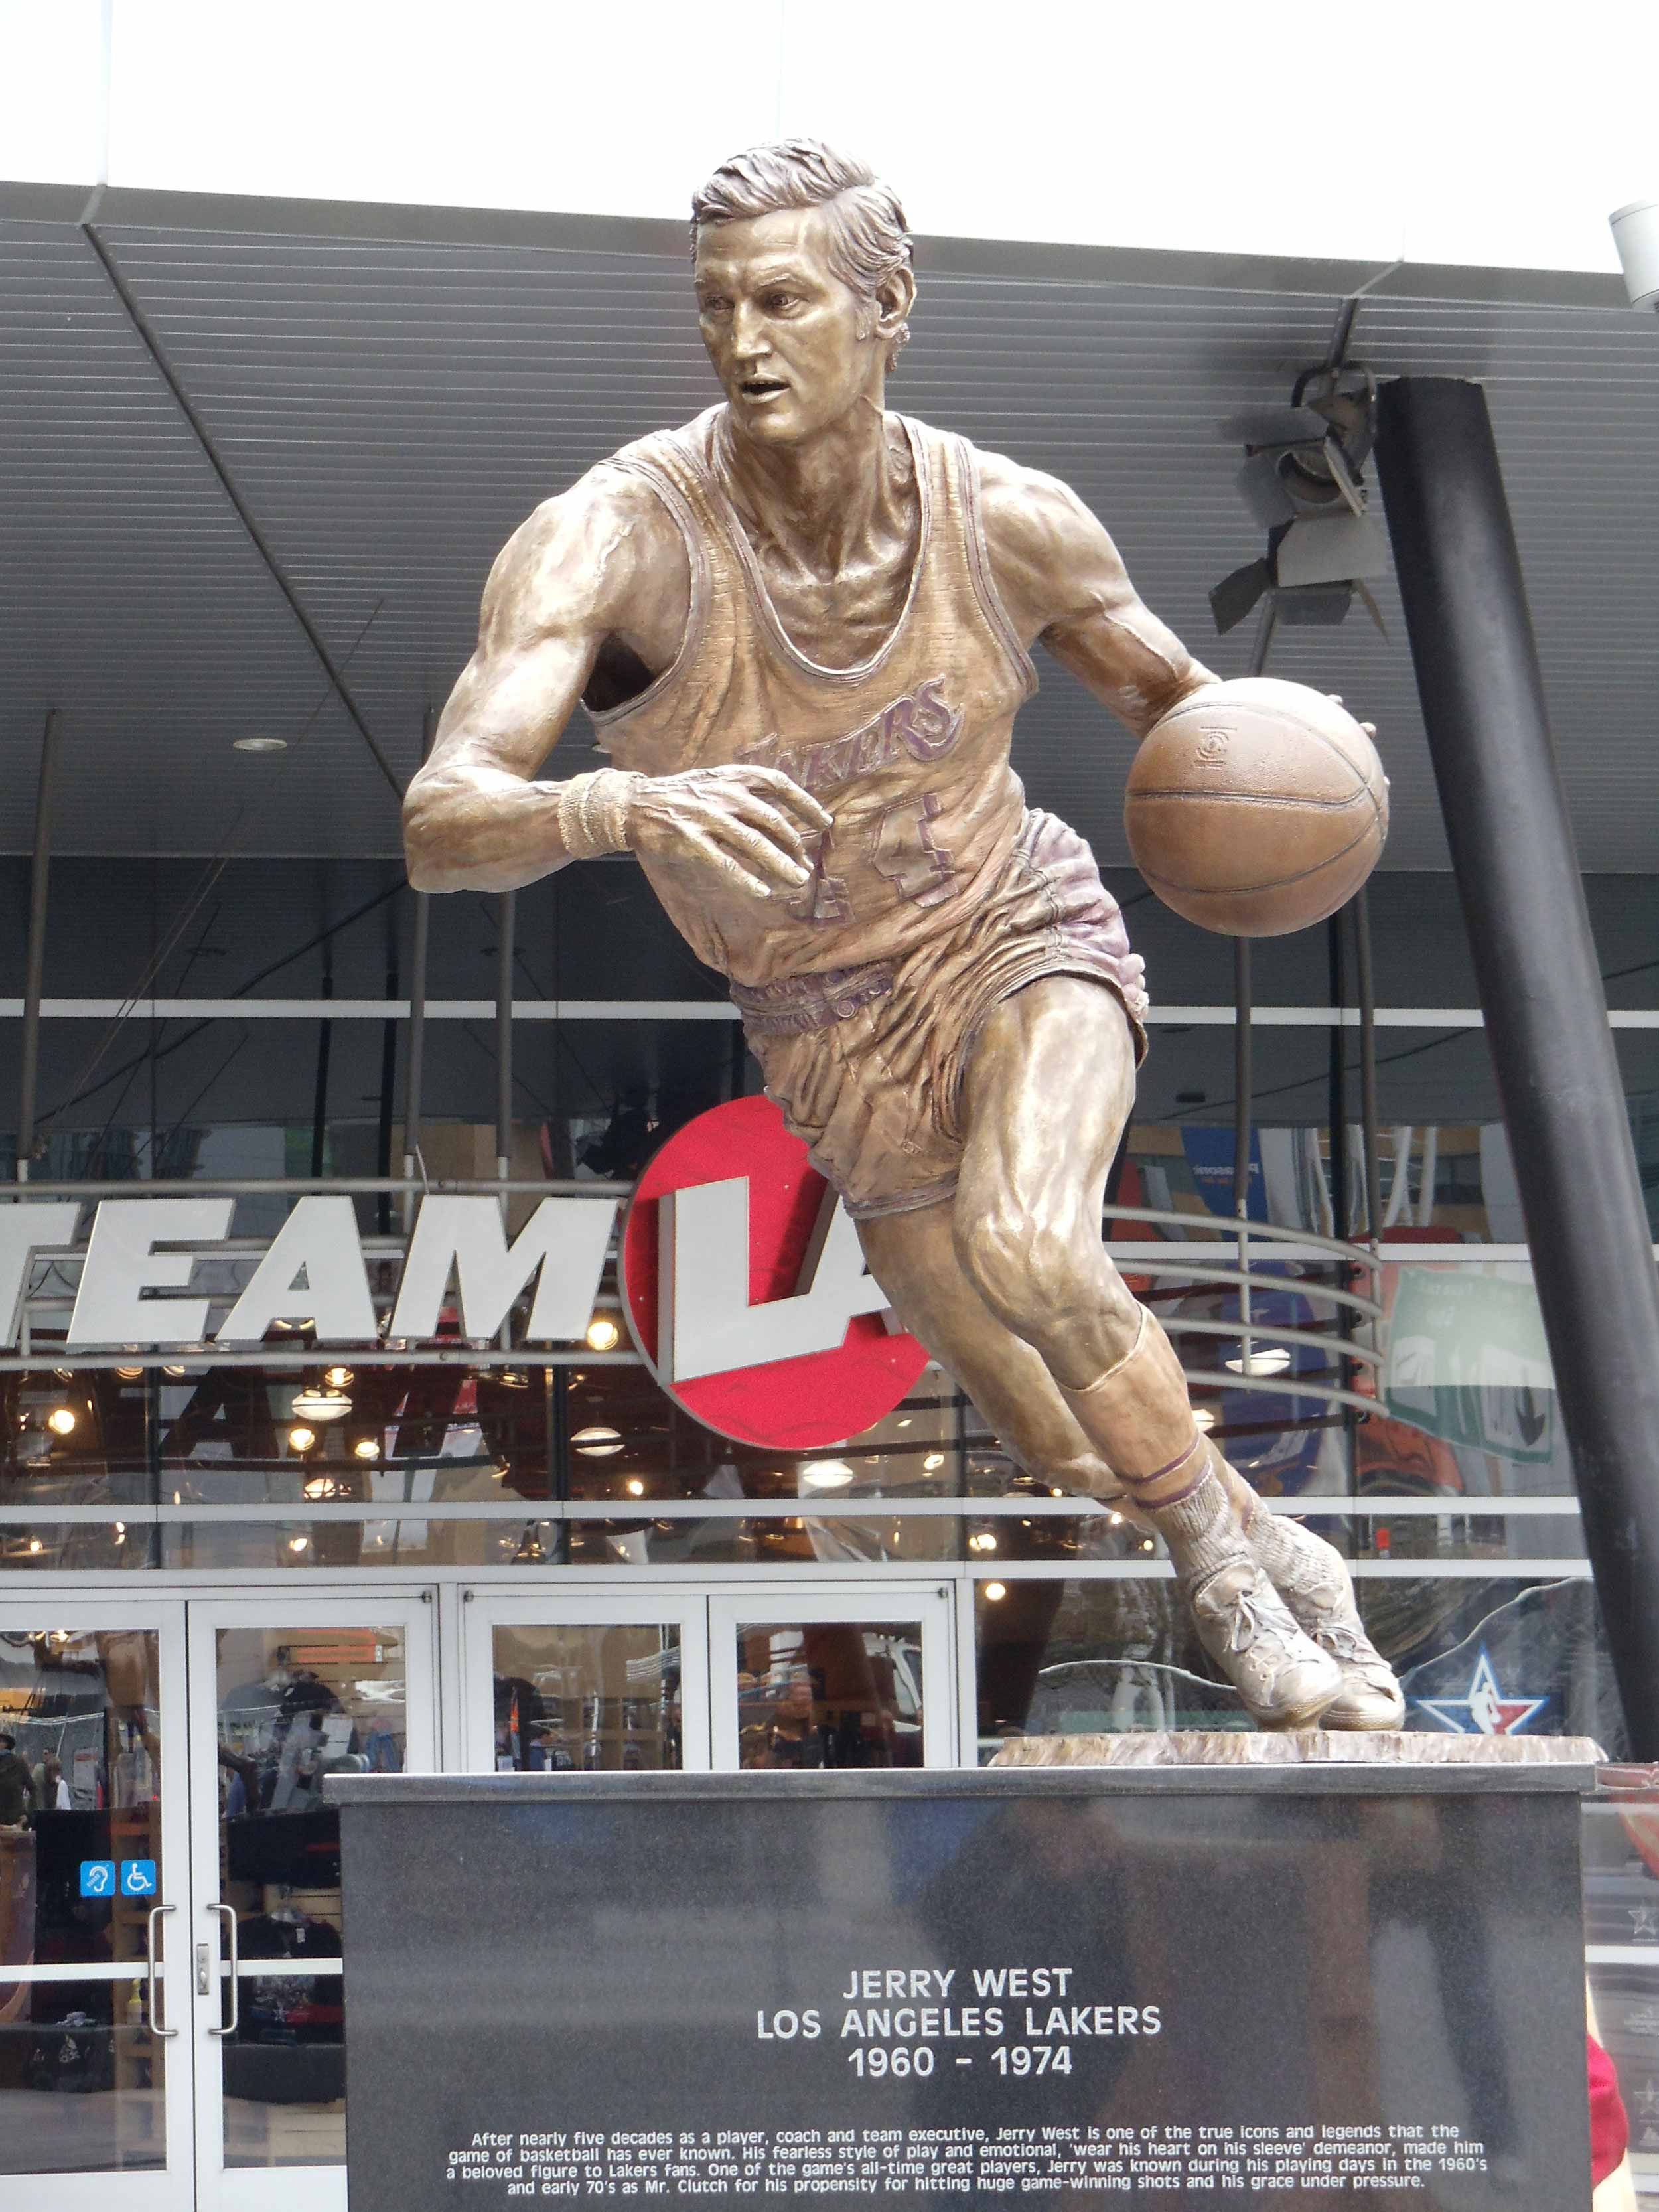 Jerry West statue, LA Lakers, Staples Center